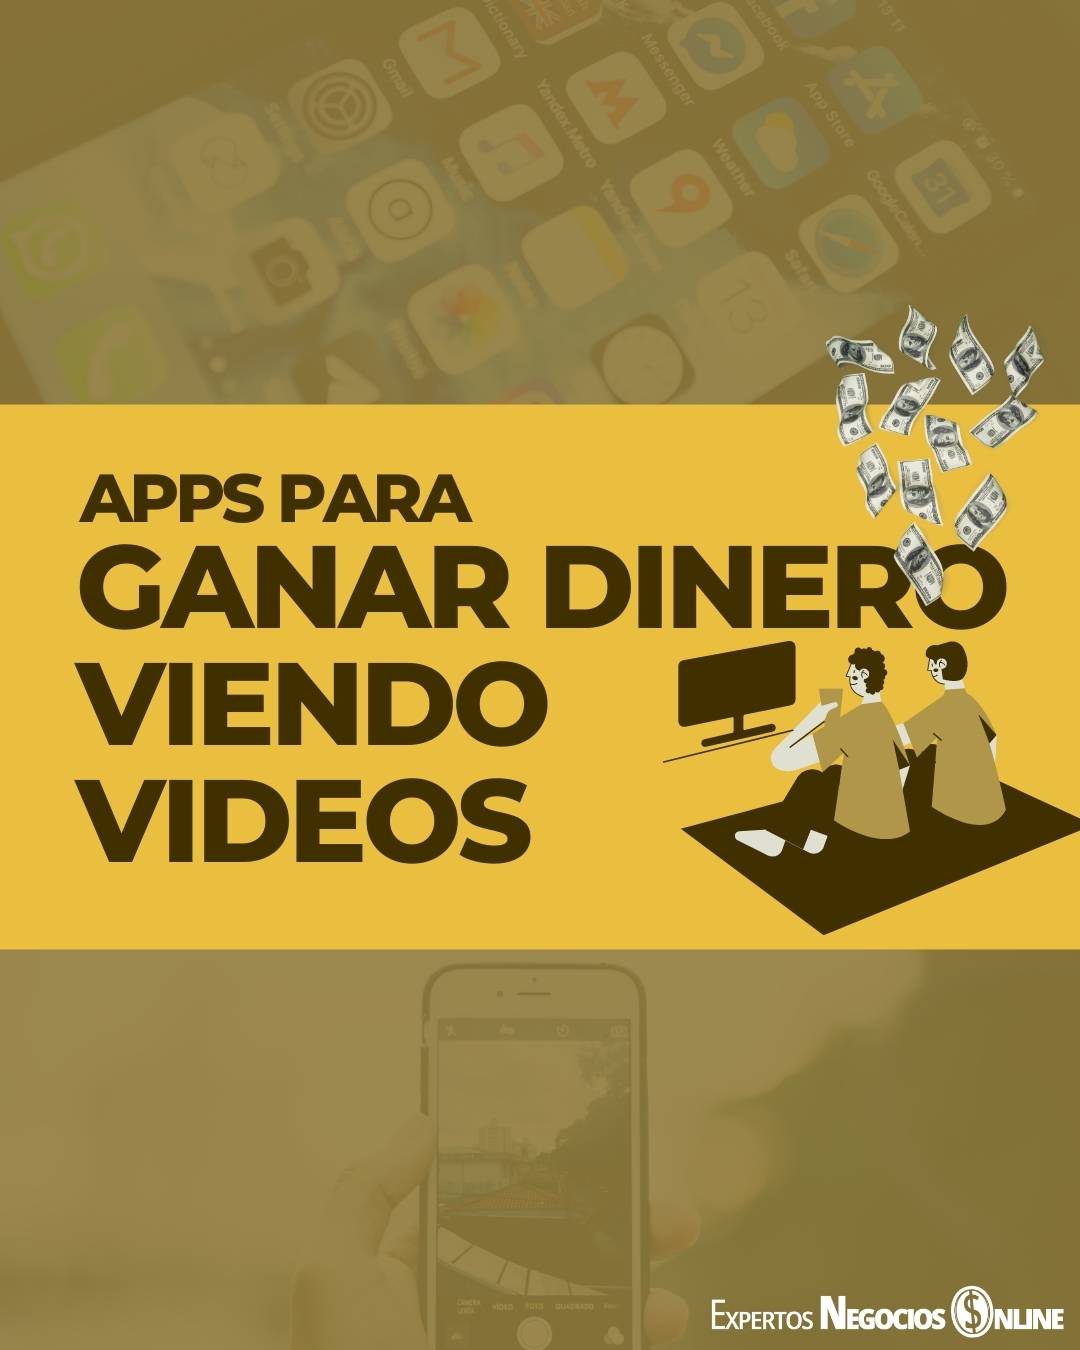 Apps para ver videos y Ganar dinero viendo videos y anuncios